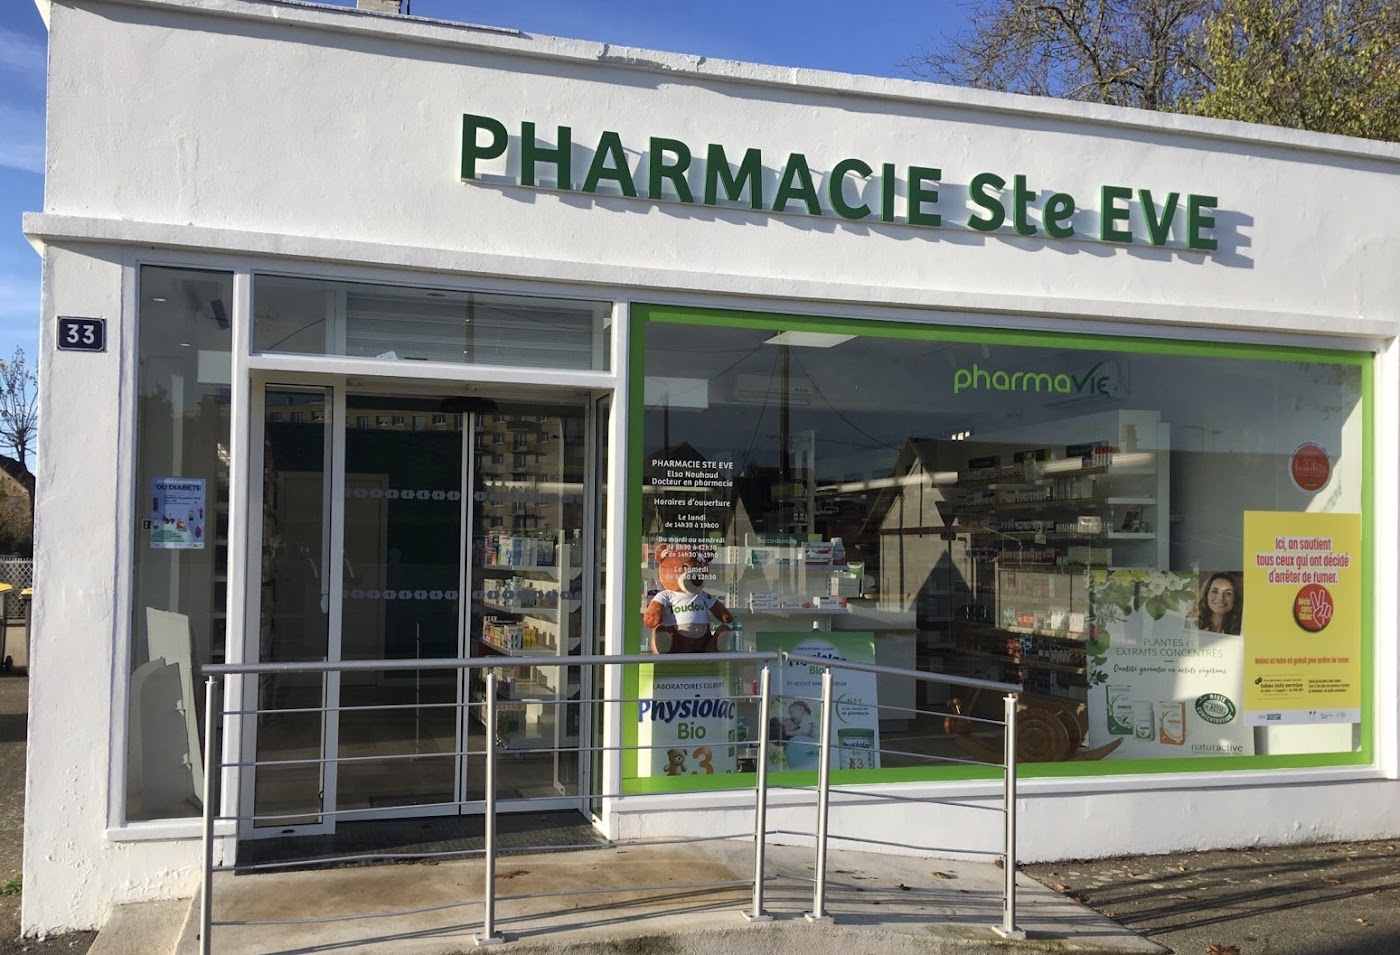 Pharmacie Ste Eve